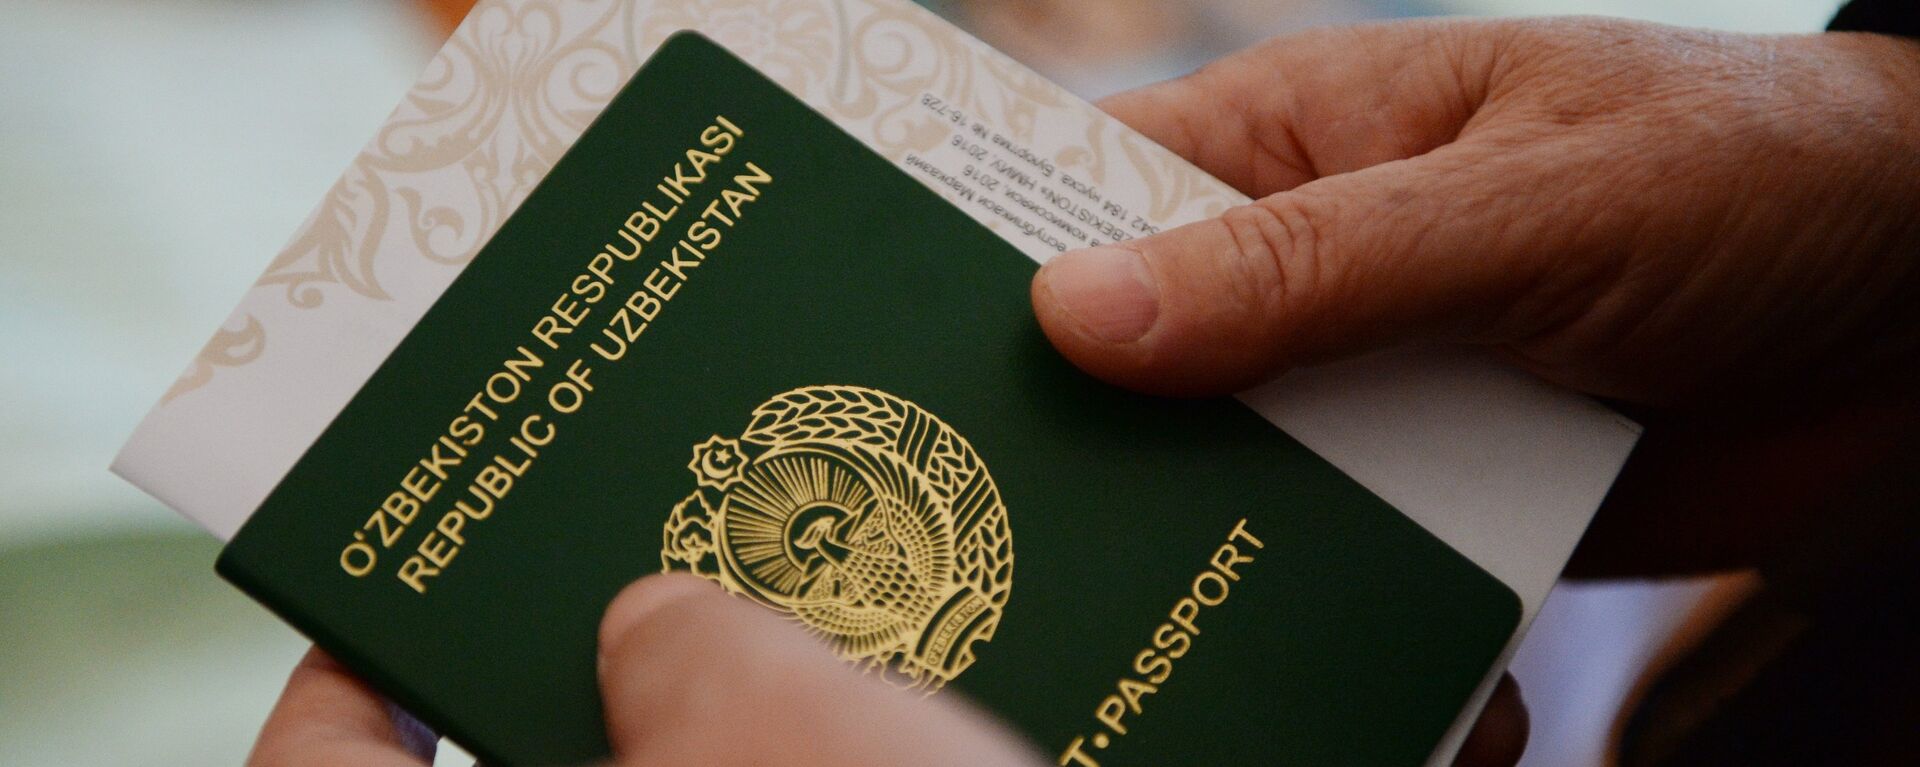 Паспорт и бланк в руках избирателя - Sputnik Узбекистан, 1920, 15.06.2021